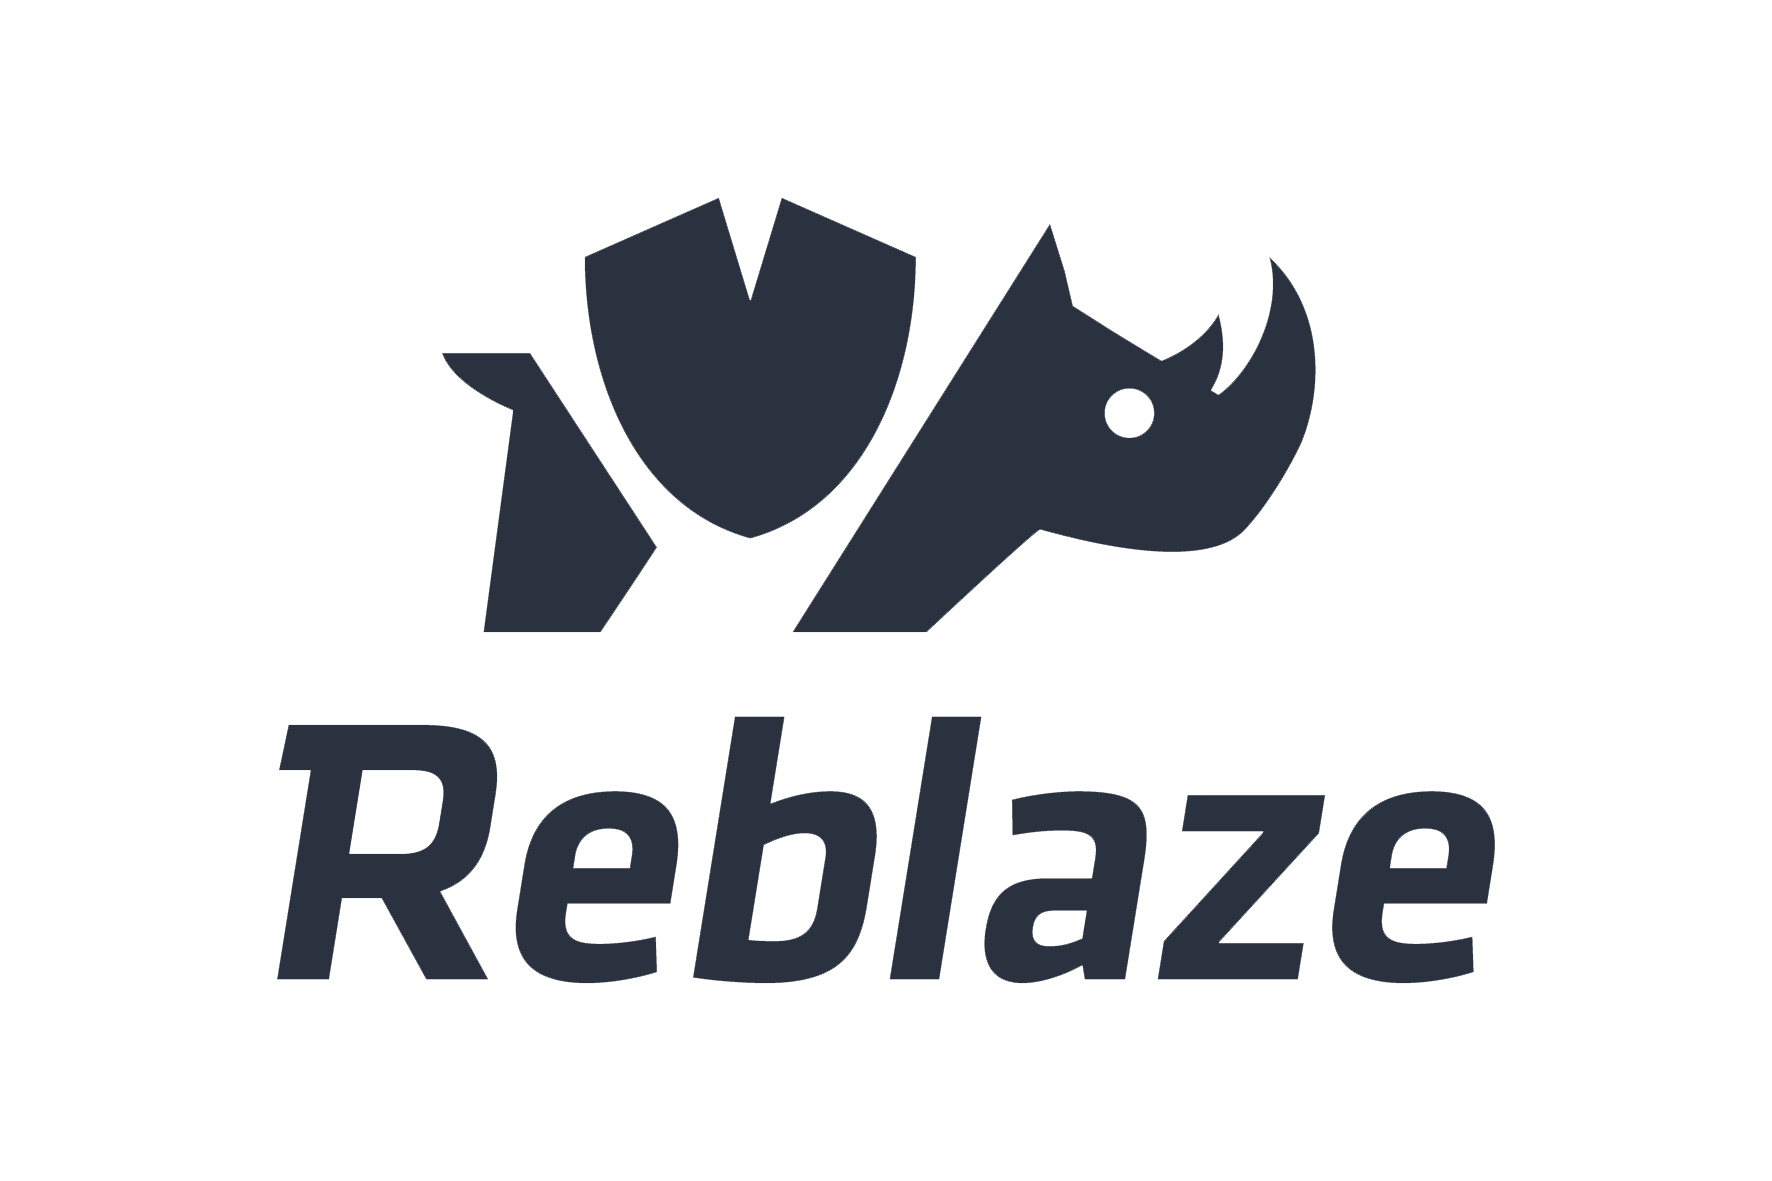 Reblaze logo